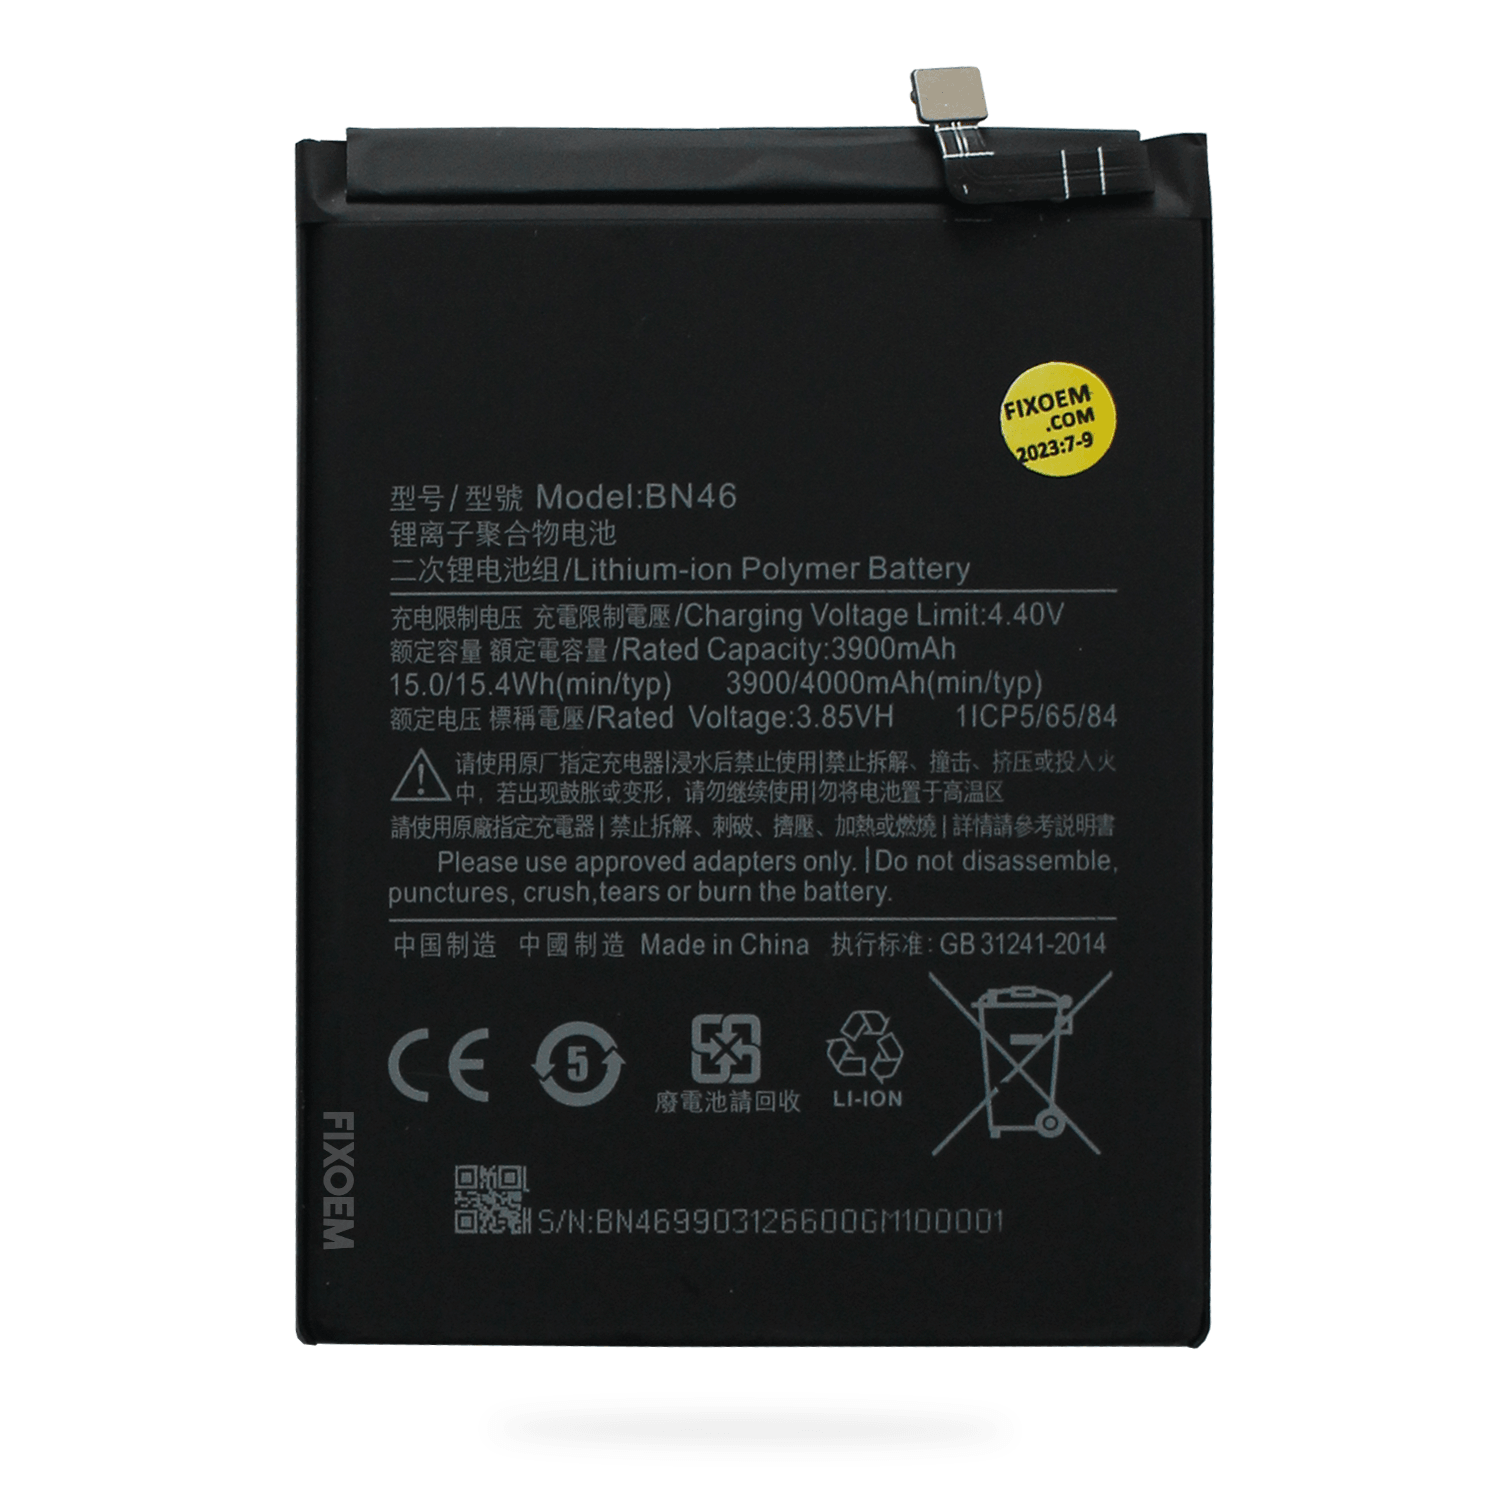 Bateria Xiaomi Redmi Note 8 / Note 8T / Redmi 7 / Note 6 Bn46 M1908C3XG M1908C3JH M1908C3JG M1908C3JI M1810F6LG |+2,000 reseñas 4.8/5 ⭐